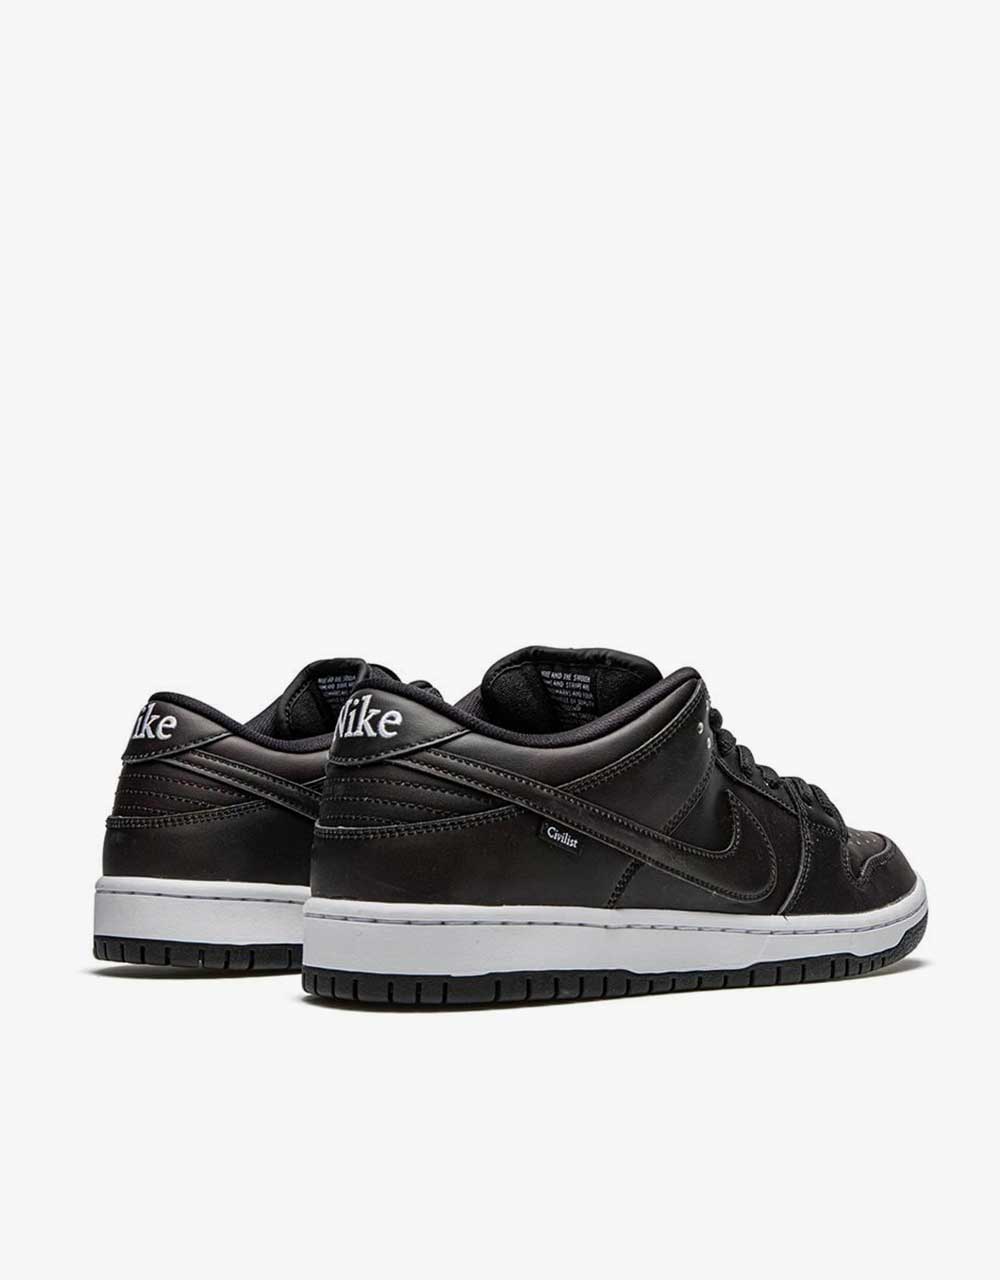 Nike SB "Civilist" Dunk Low Pro QS Skate Shoes - Black/Black-Black